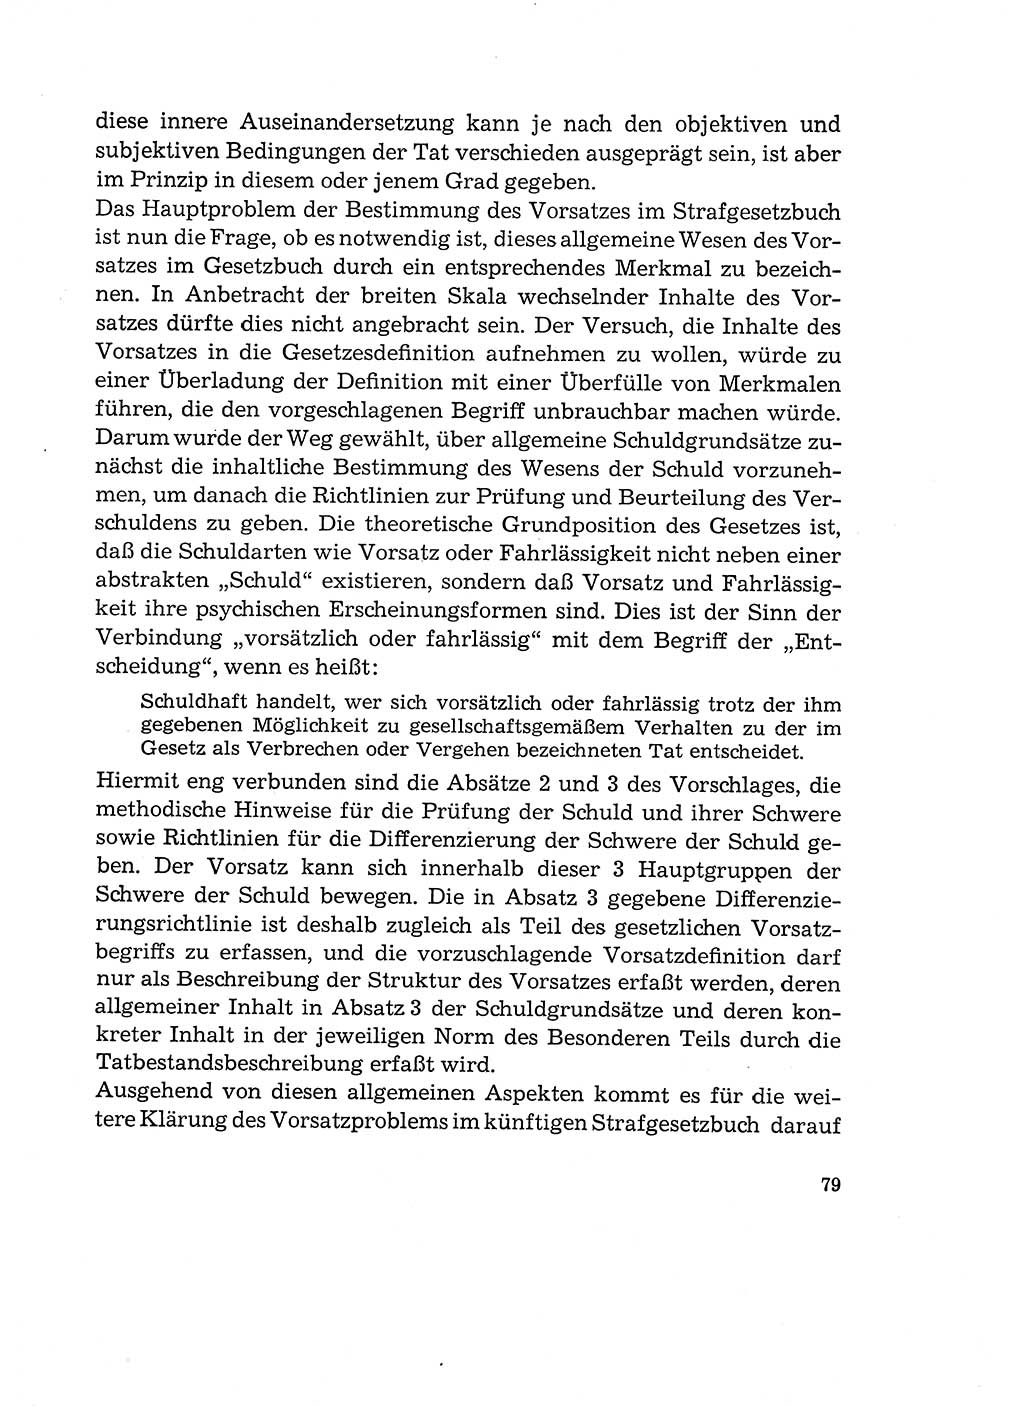 Verantwortung und Schuld im neuen Strafgesetzbuch (StGB) [Deutsche Demokratische Republik (DDR)] 1964, Seite 79 (Verantw. Sch. StGB DDR 1964, S. 79)